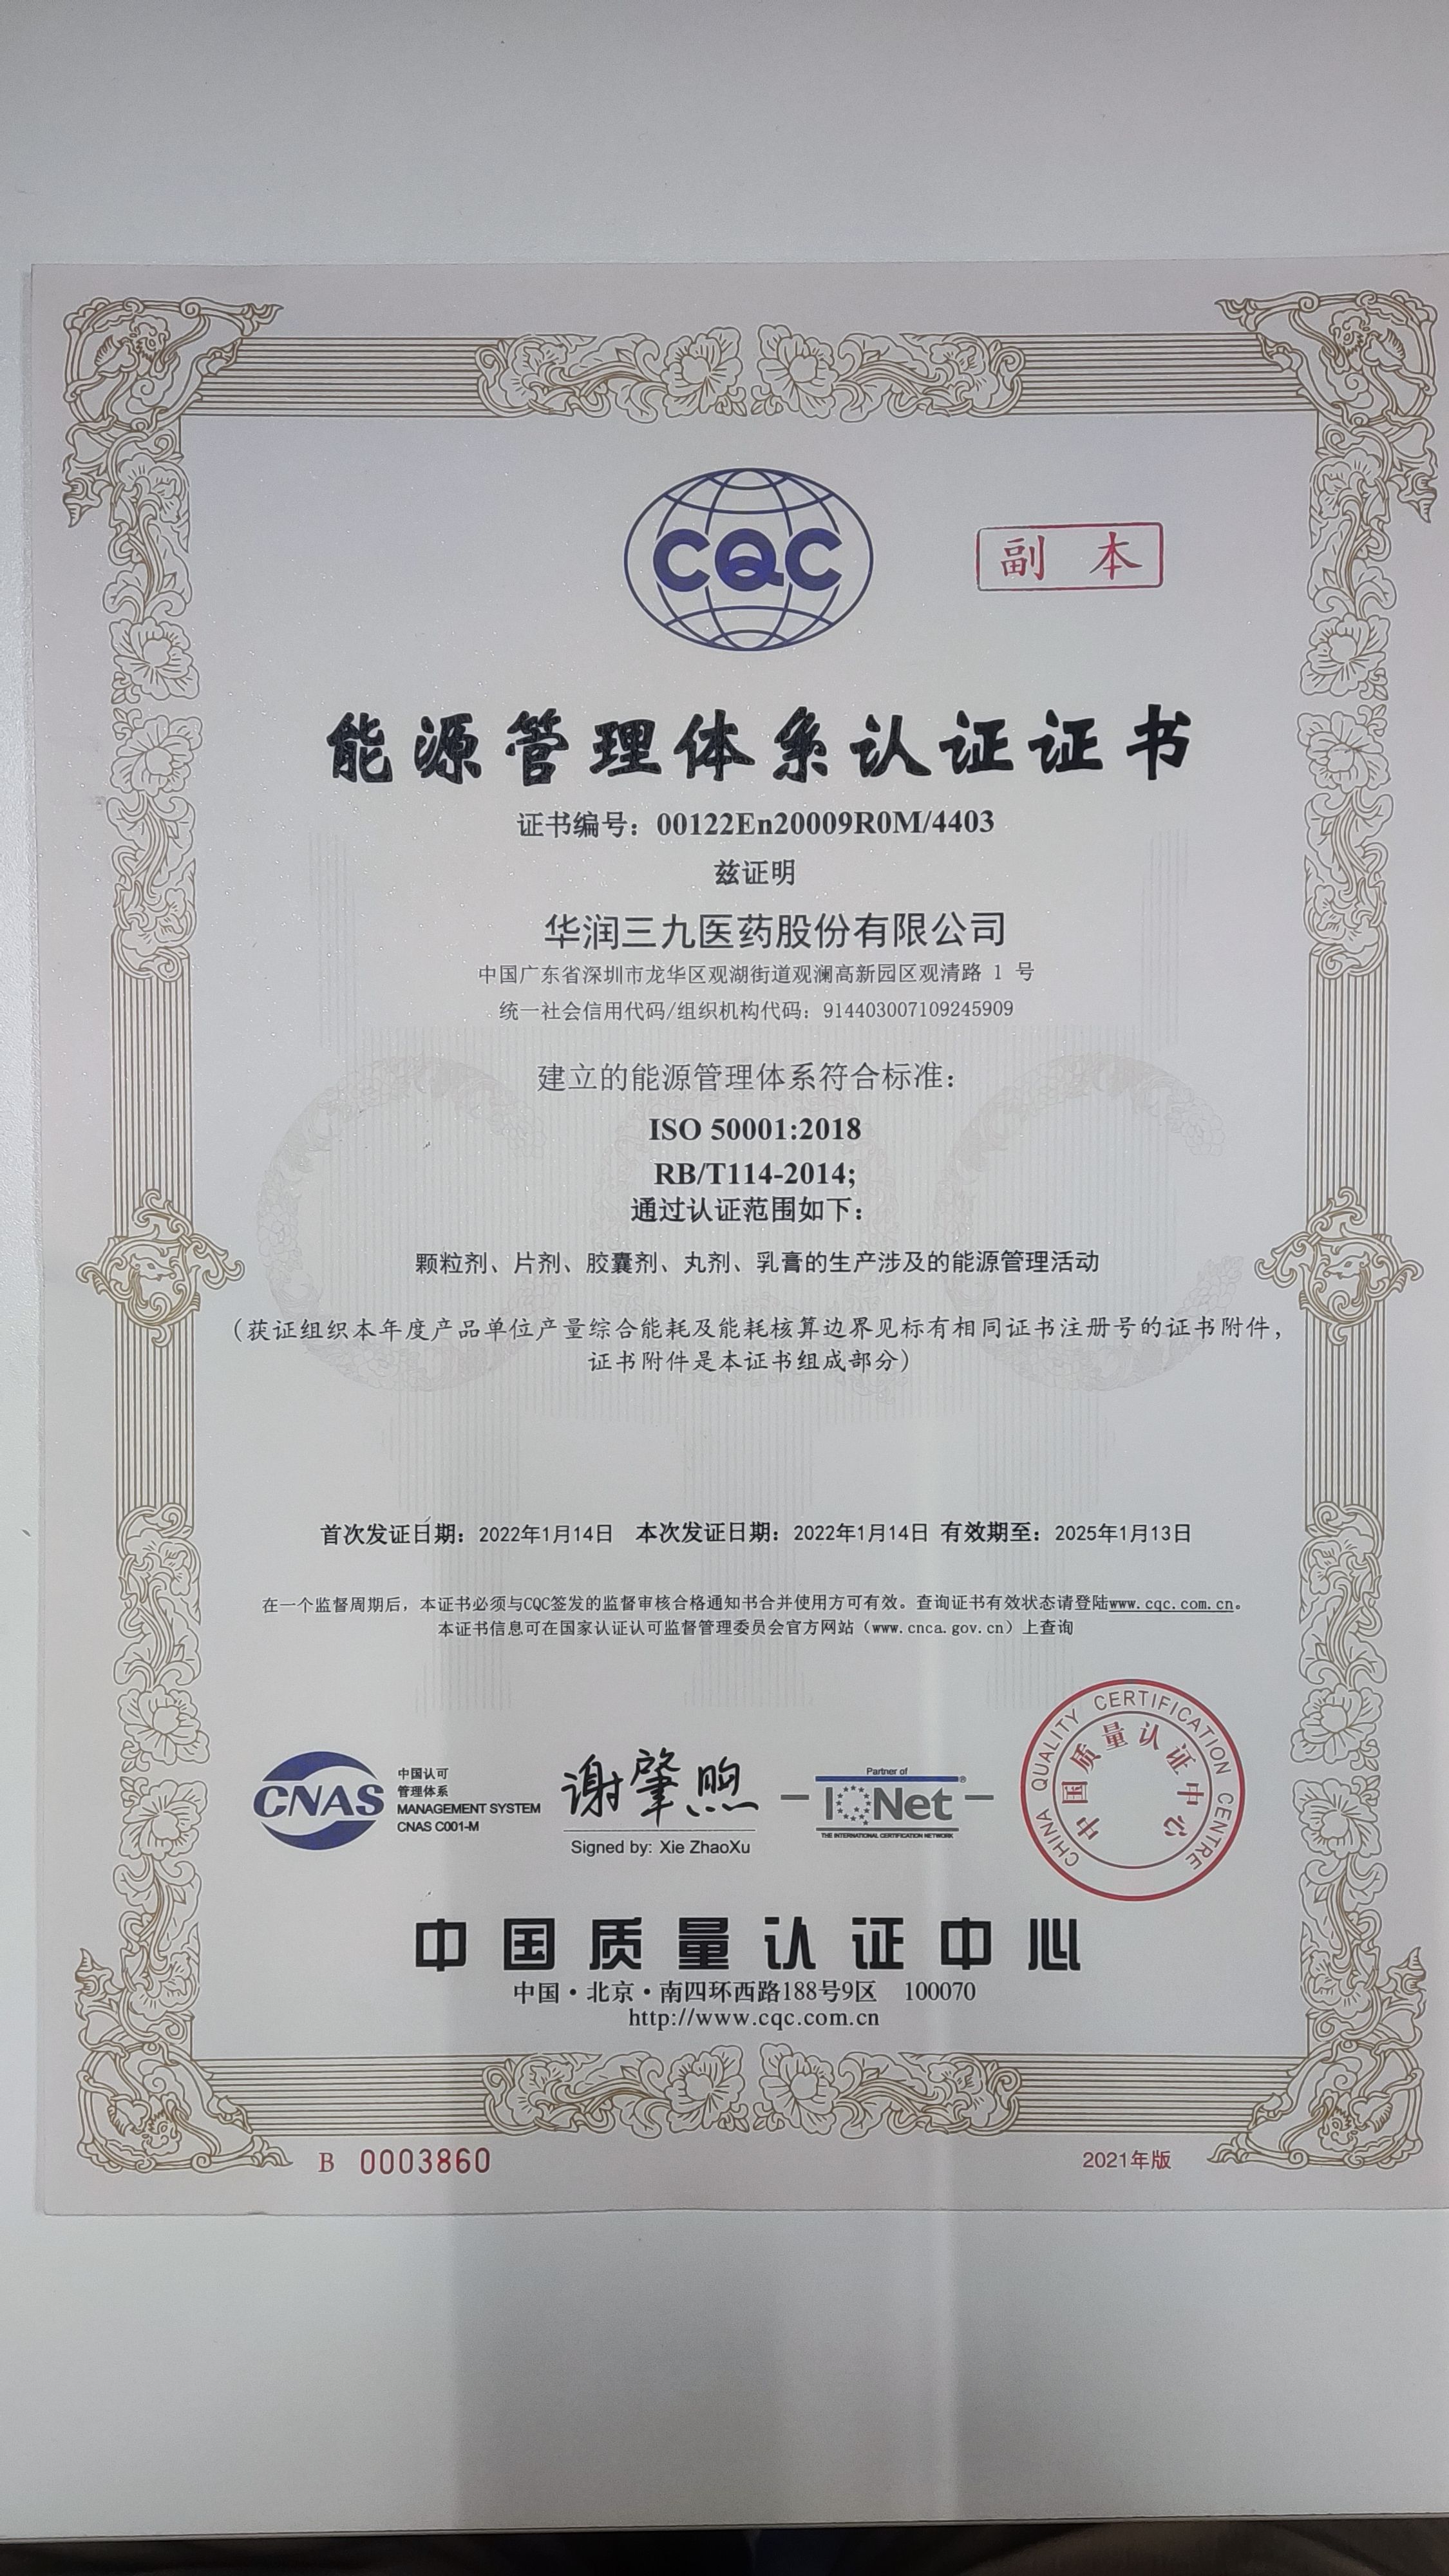 華潤三九觀瀾基地通過ISO50001能源管理體系認證